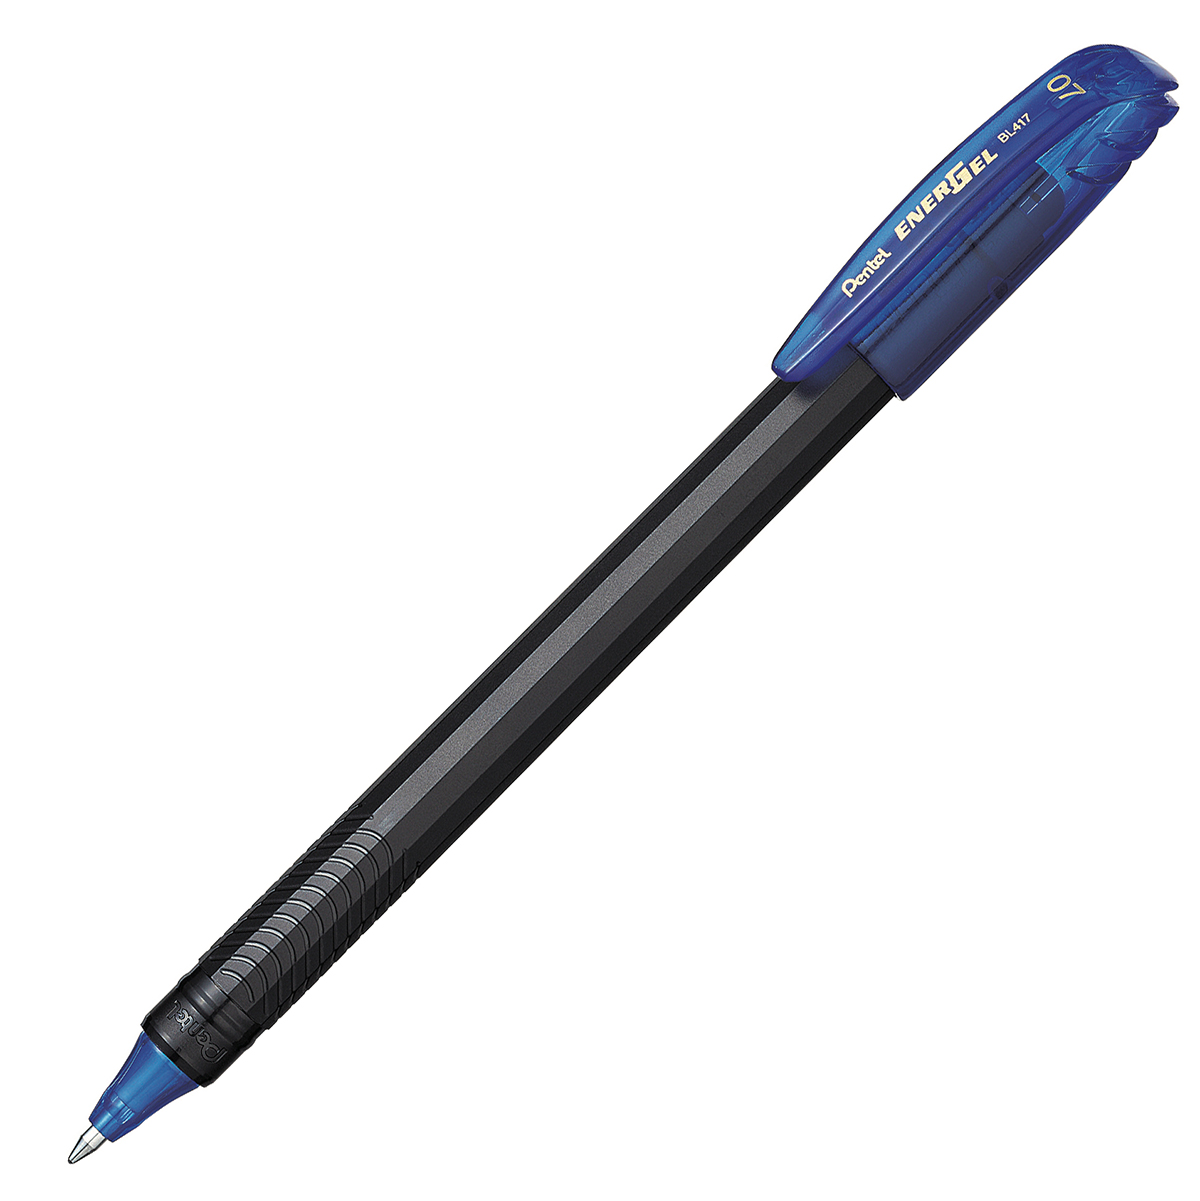 Bolígrafo Pentel energel stick punto 0.7 Bolígrafo Pentel energel tinta gel color azul, 0.7 mm secado rápido, peso ligero con 12 lados, hecho de 62% material reciclado. la tapa indica el color de la tinta                                                                                             mm (mediano) tinta azul, 1 pieza         - PENTEL